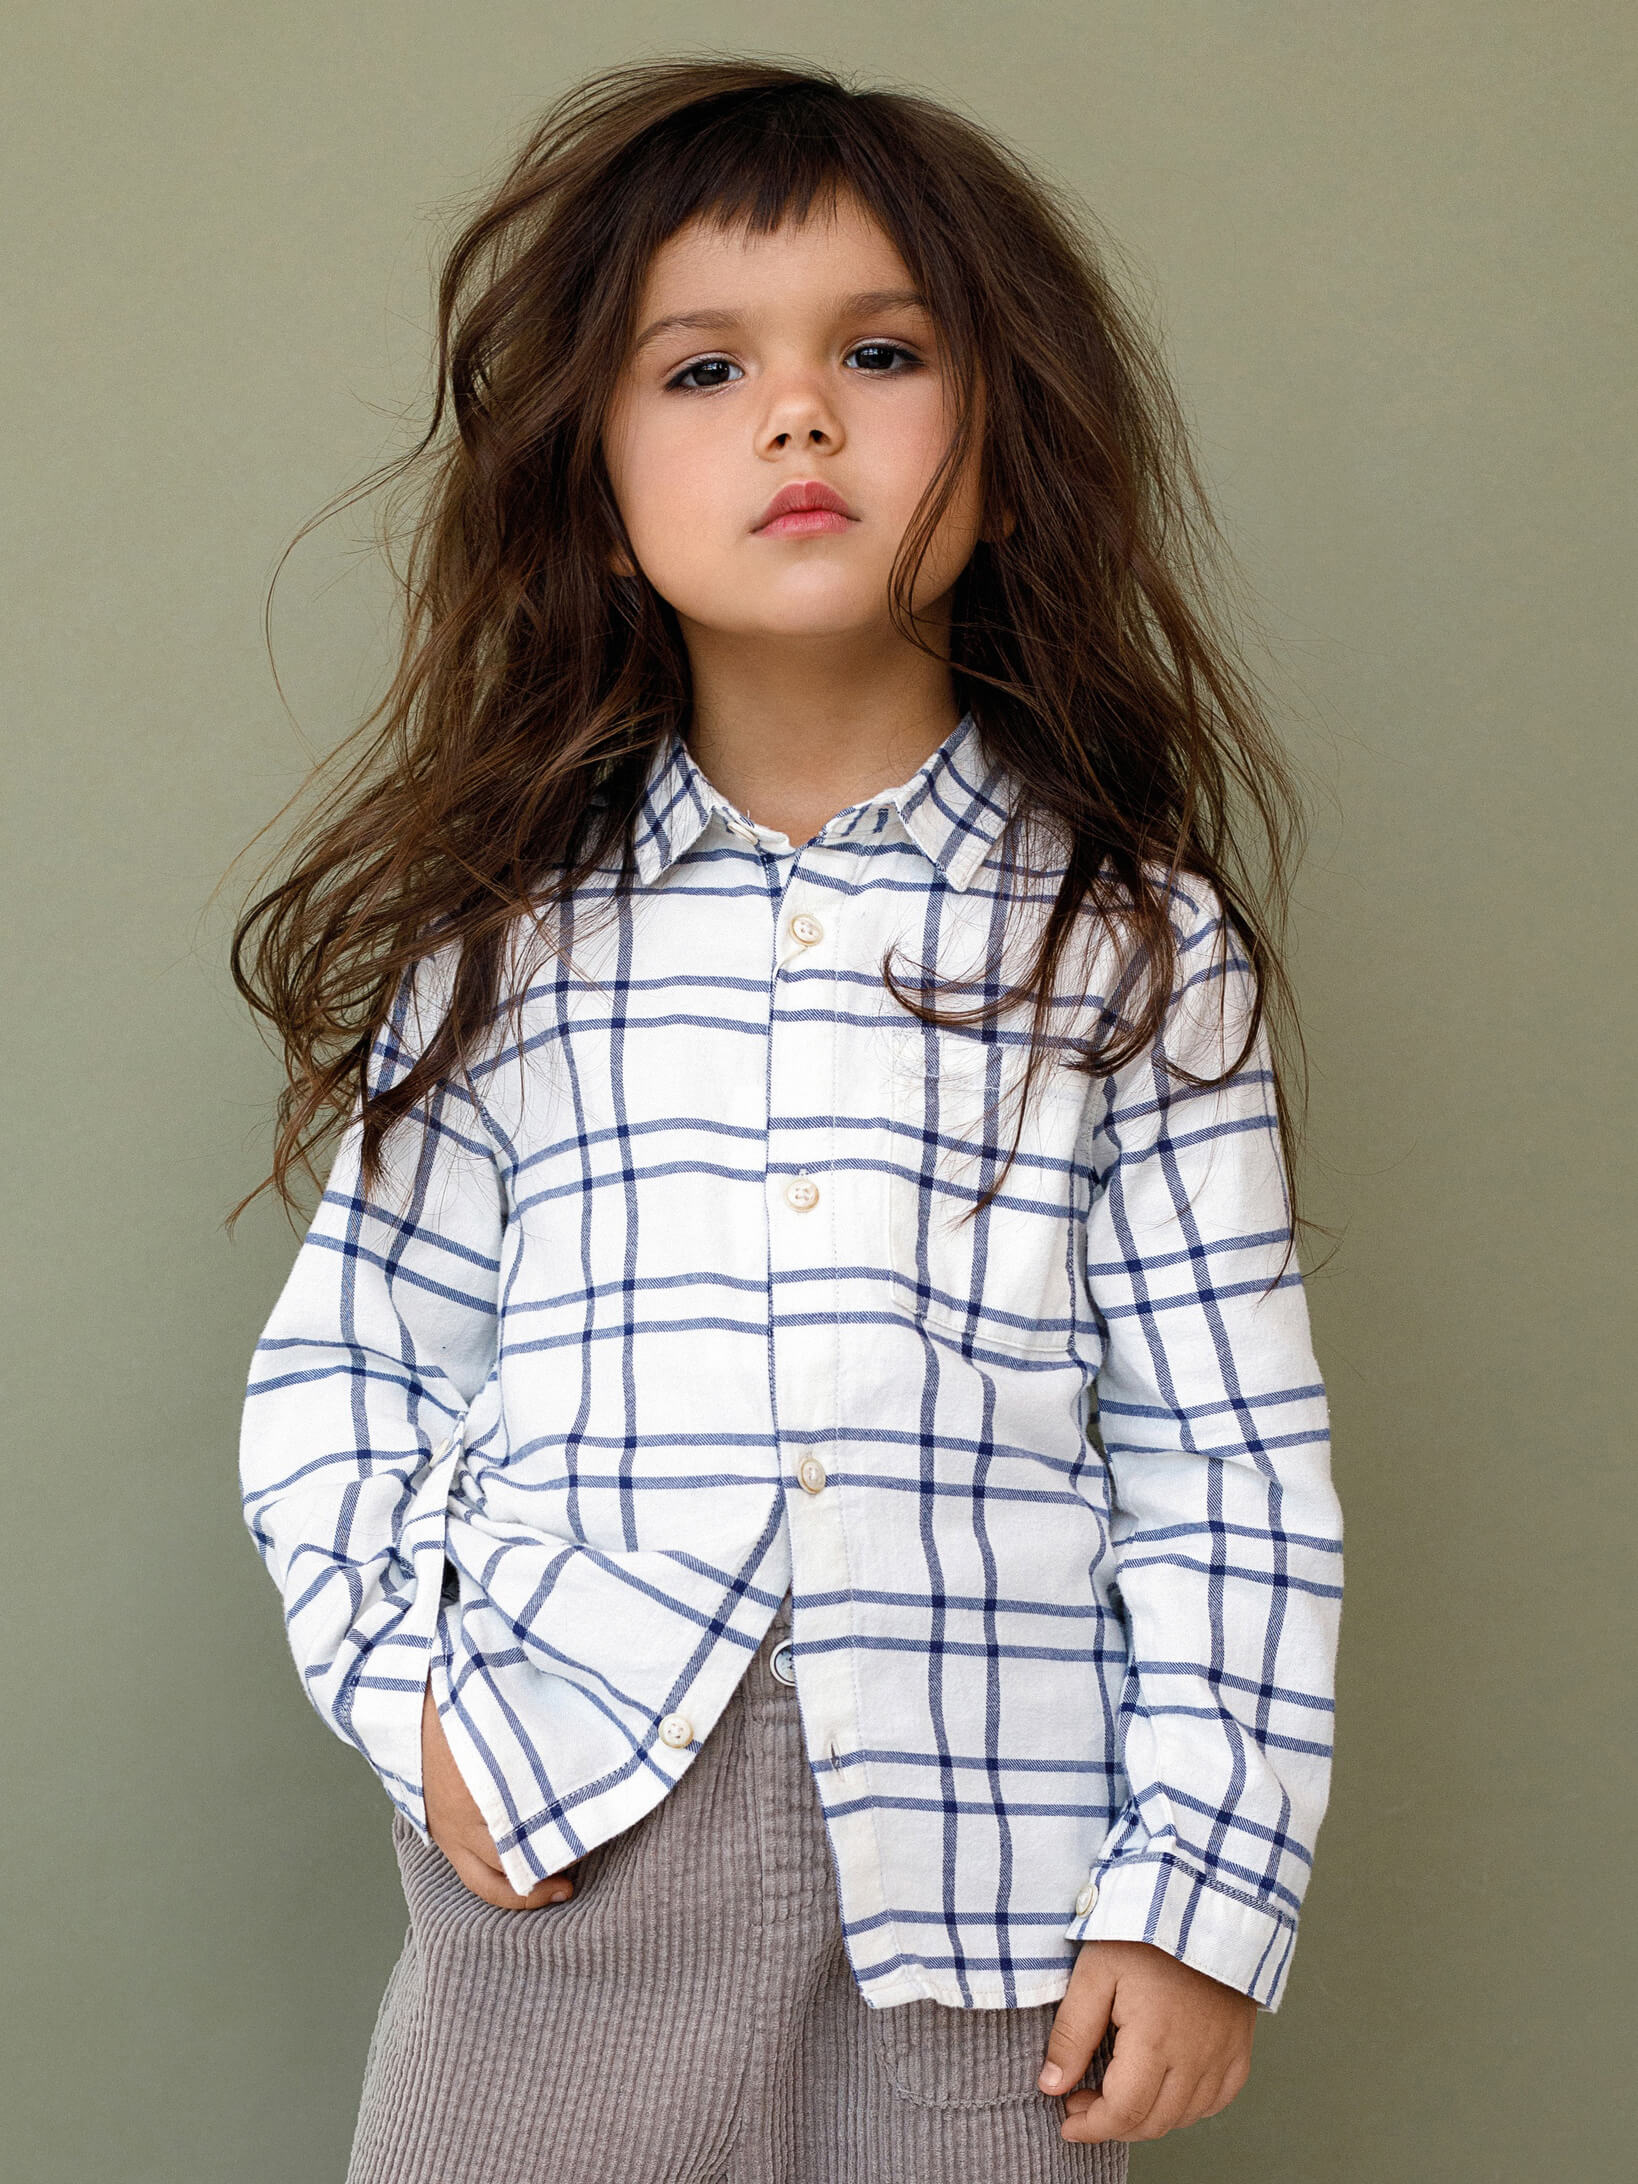 Фото одежды для маркетплейсов на девочке